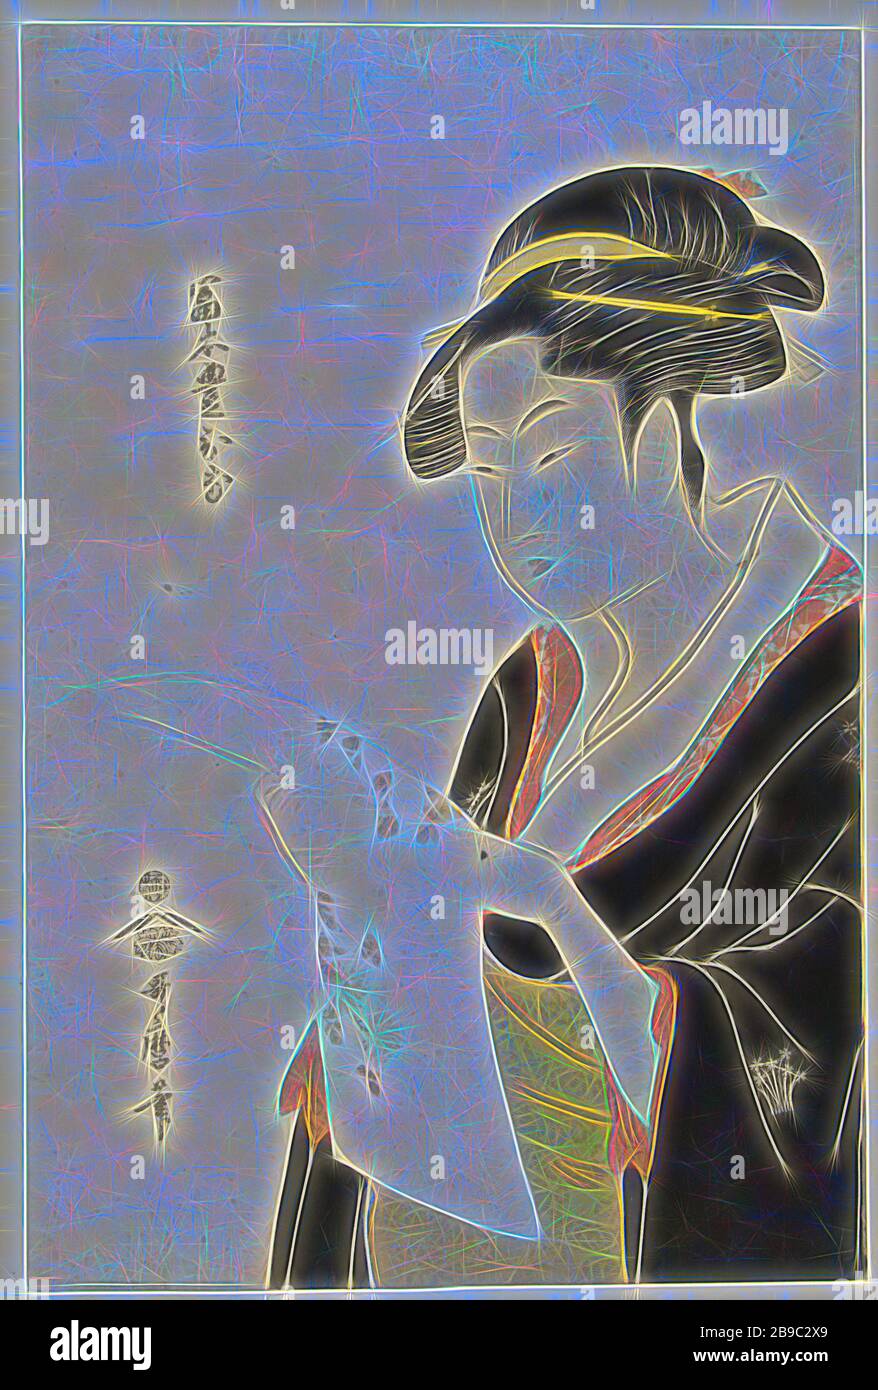 Ritratto di Tomimoto Toyohina Tomimoto Toyohina (titolo su oggetto), ritratto di Busto della famosa bellezza Tomimoto Toyohina. Legge un lungo surimono con un modello di crisantemi. (Bijinga), Kitagawa Utamaro (citato su oggetto), Tokyo, 1792 - 1796, carta, legno a colori, h 380 mm × w 252 mm, Reimagined by Gibon, disegno di calore allegro di luminosità e raggi di luce radianza. Arte classica reinventata con un tocco moderno. La fotografia ispirata al futurismo, che abbraccia l'energia dinamica della tecnologia moderna, del movimento, della velocità e rivoluziona la cultura. Foto Stock